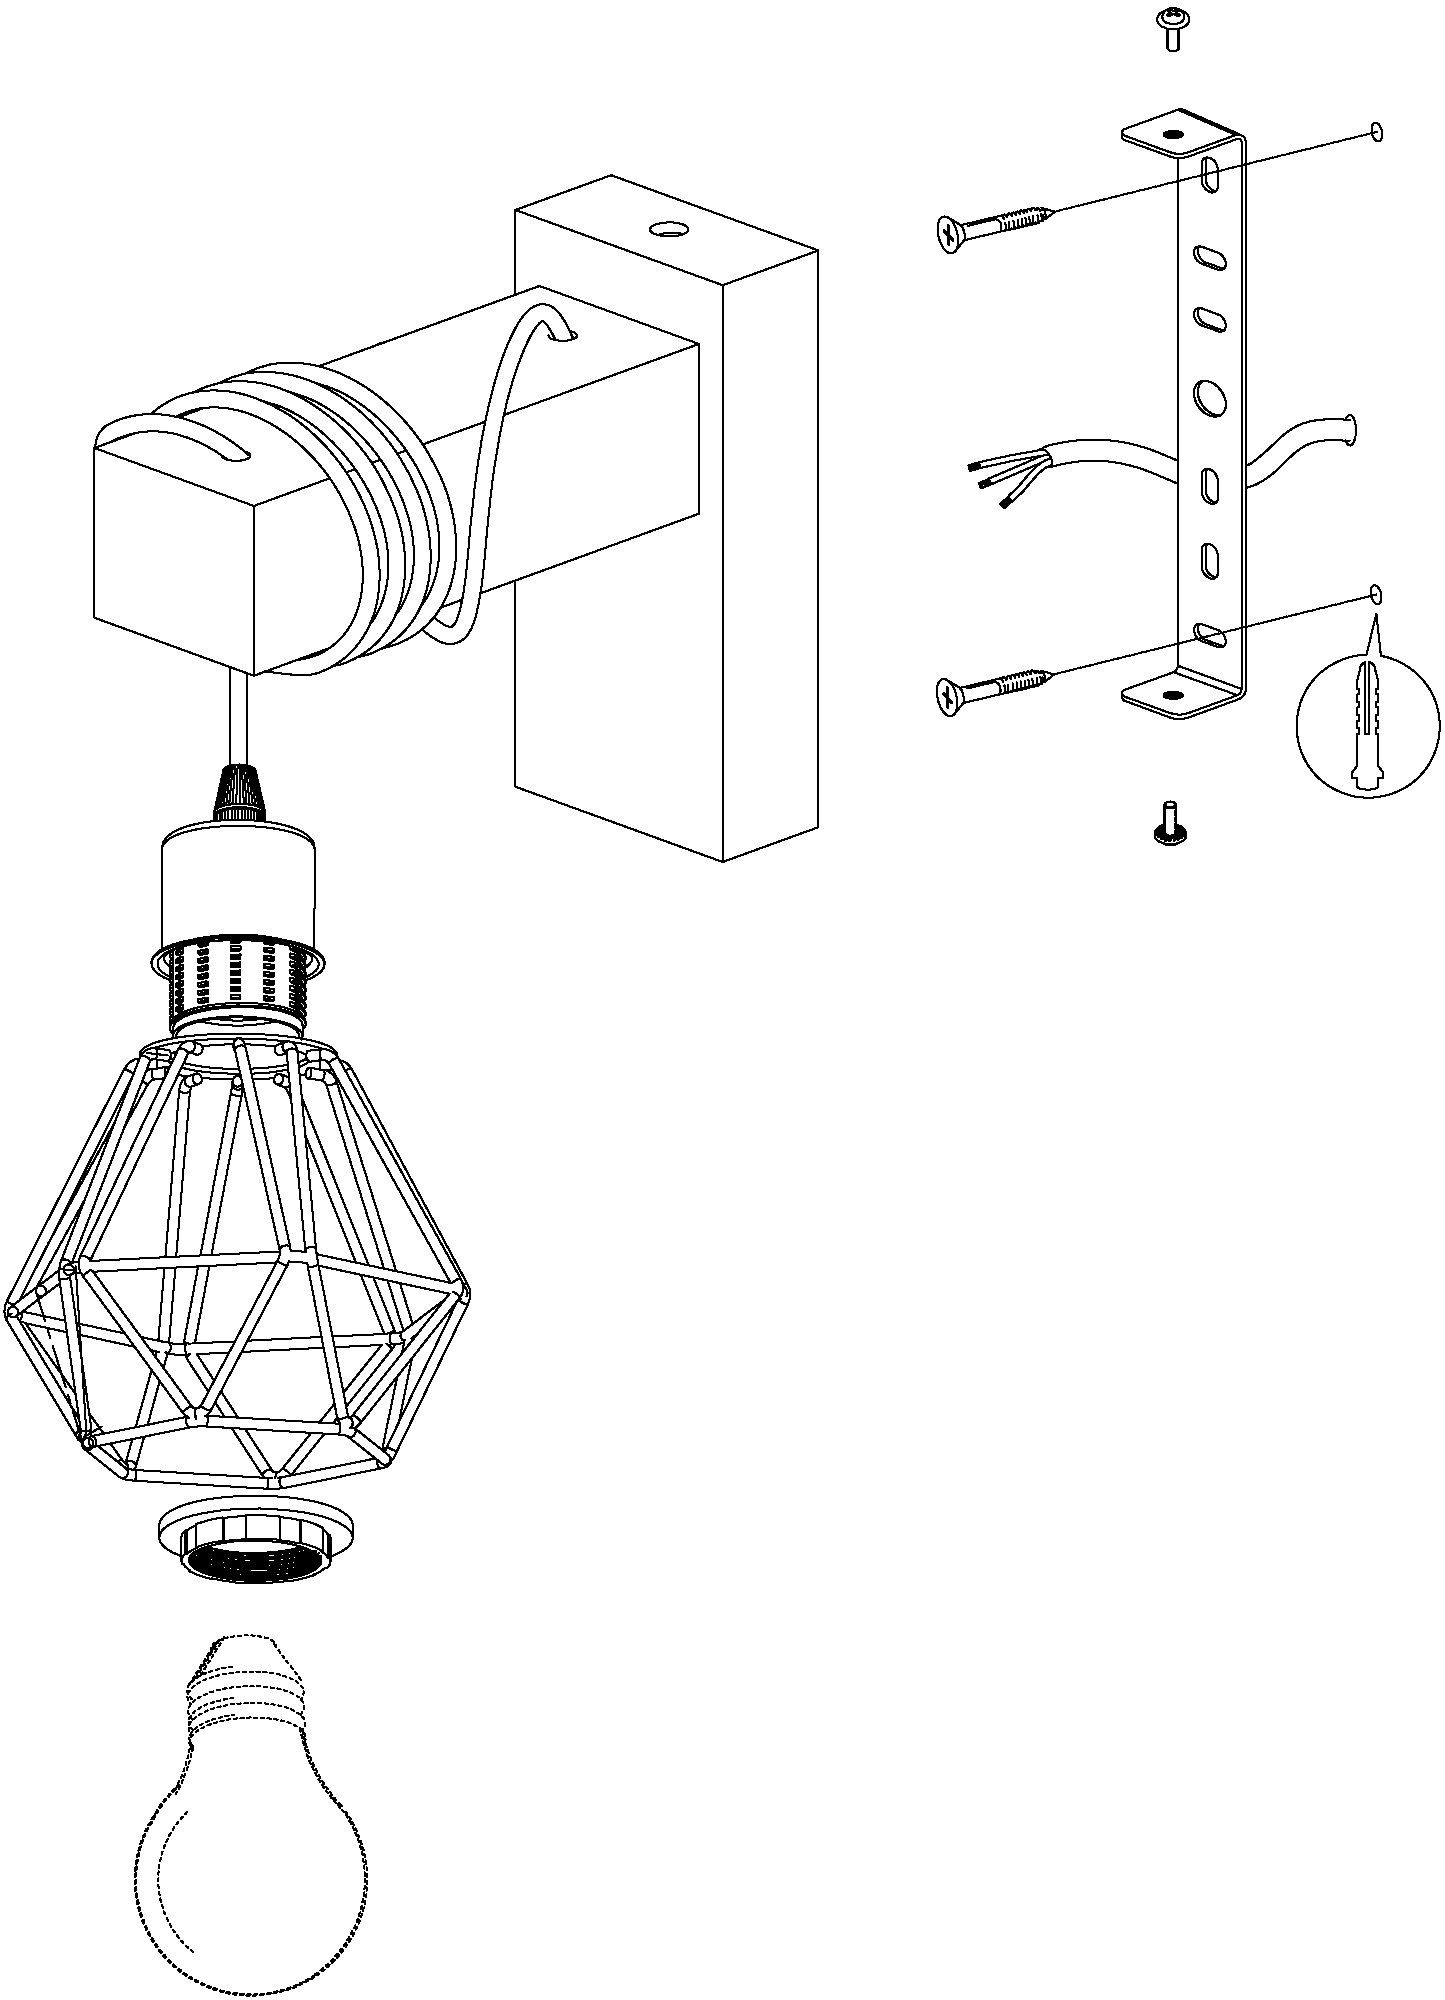 5, EGLO Wandleuchte Retro Wandleuchte TOWNSHEND ohne Fassung: Design, Lampe Industrial Leuchtmittel, E27 im Vintage